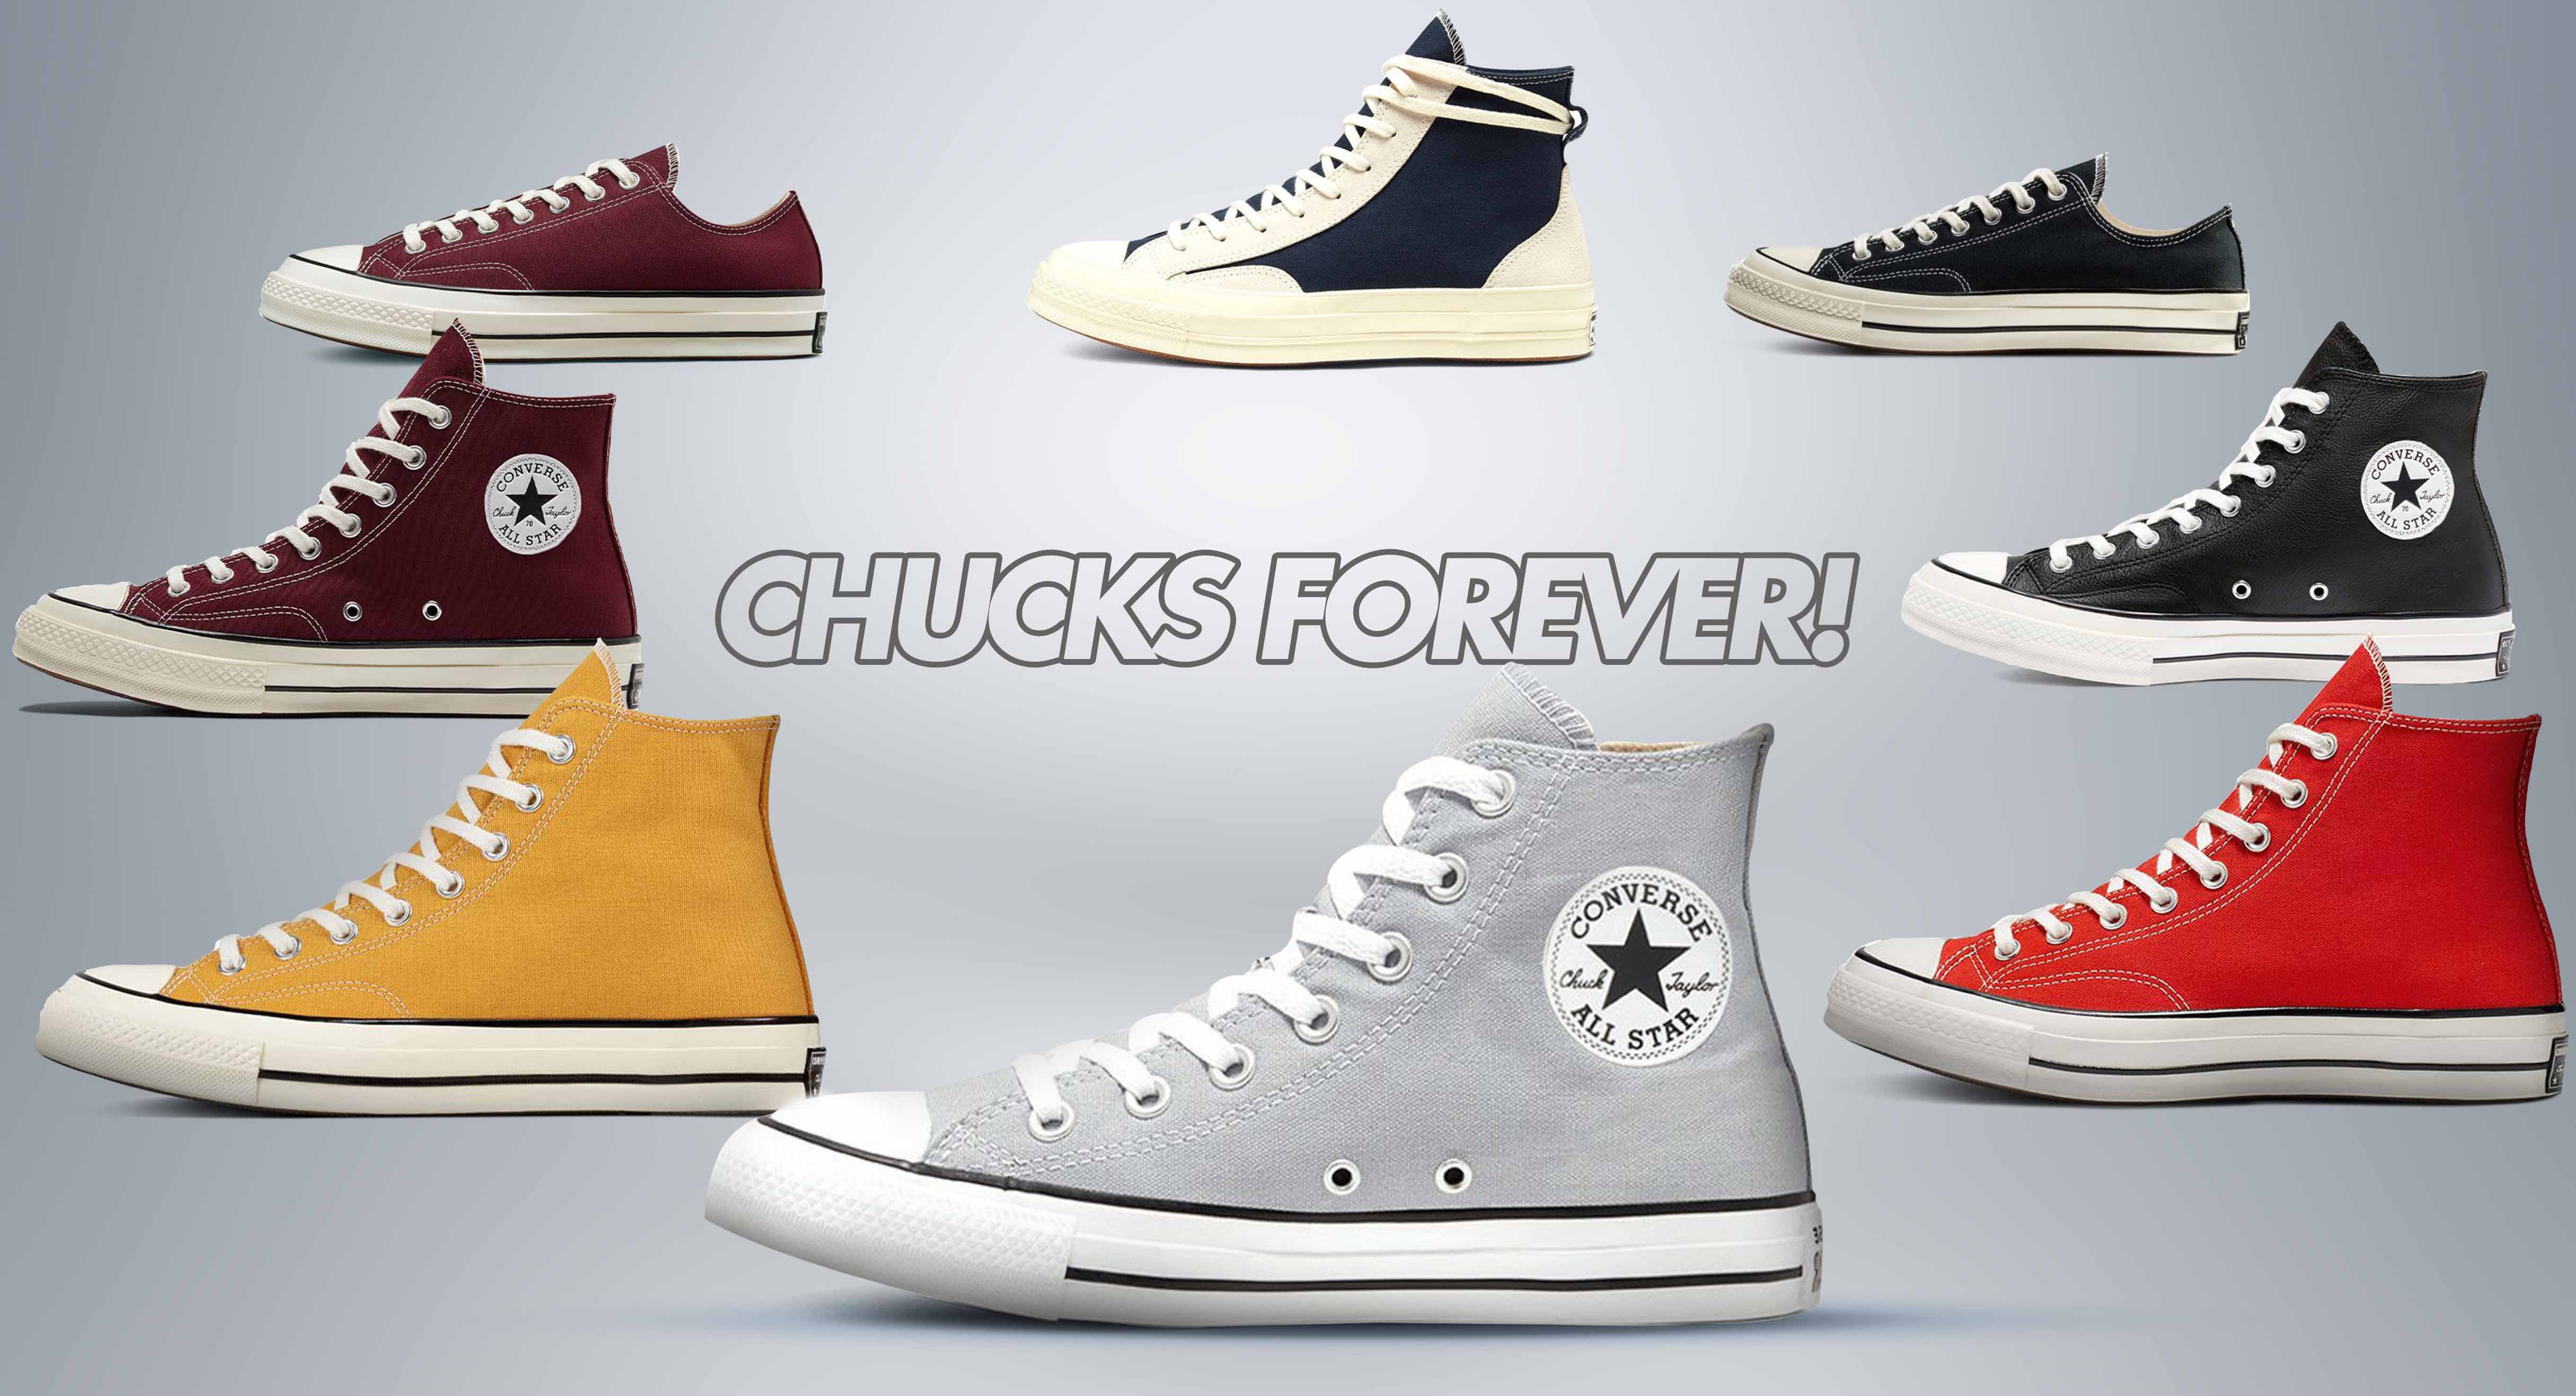 Chucks Forever!